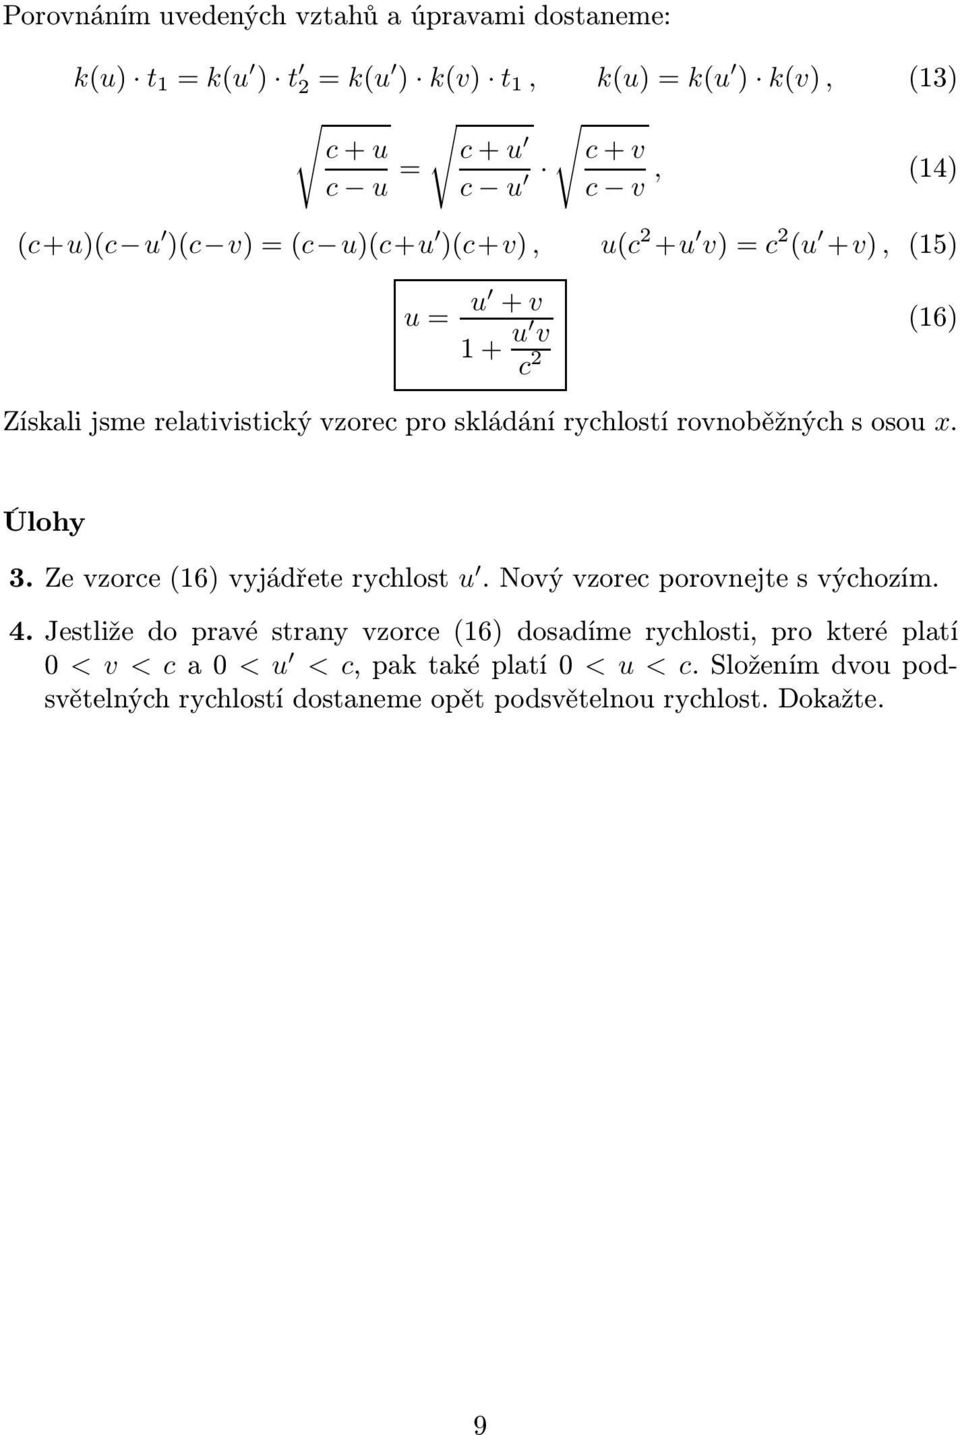 rovnoběžných s osou x. Úlohy 3.Zevzorce(16)vyjádřeterychlost u.novývzorecporovnejtesvýchozím. 4.